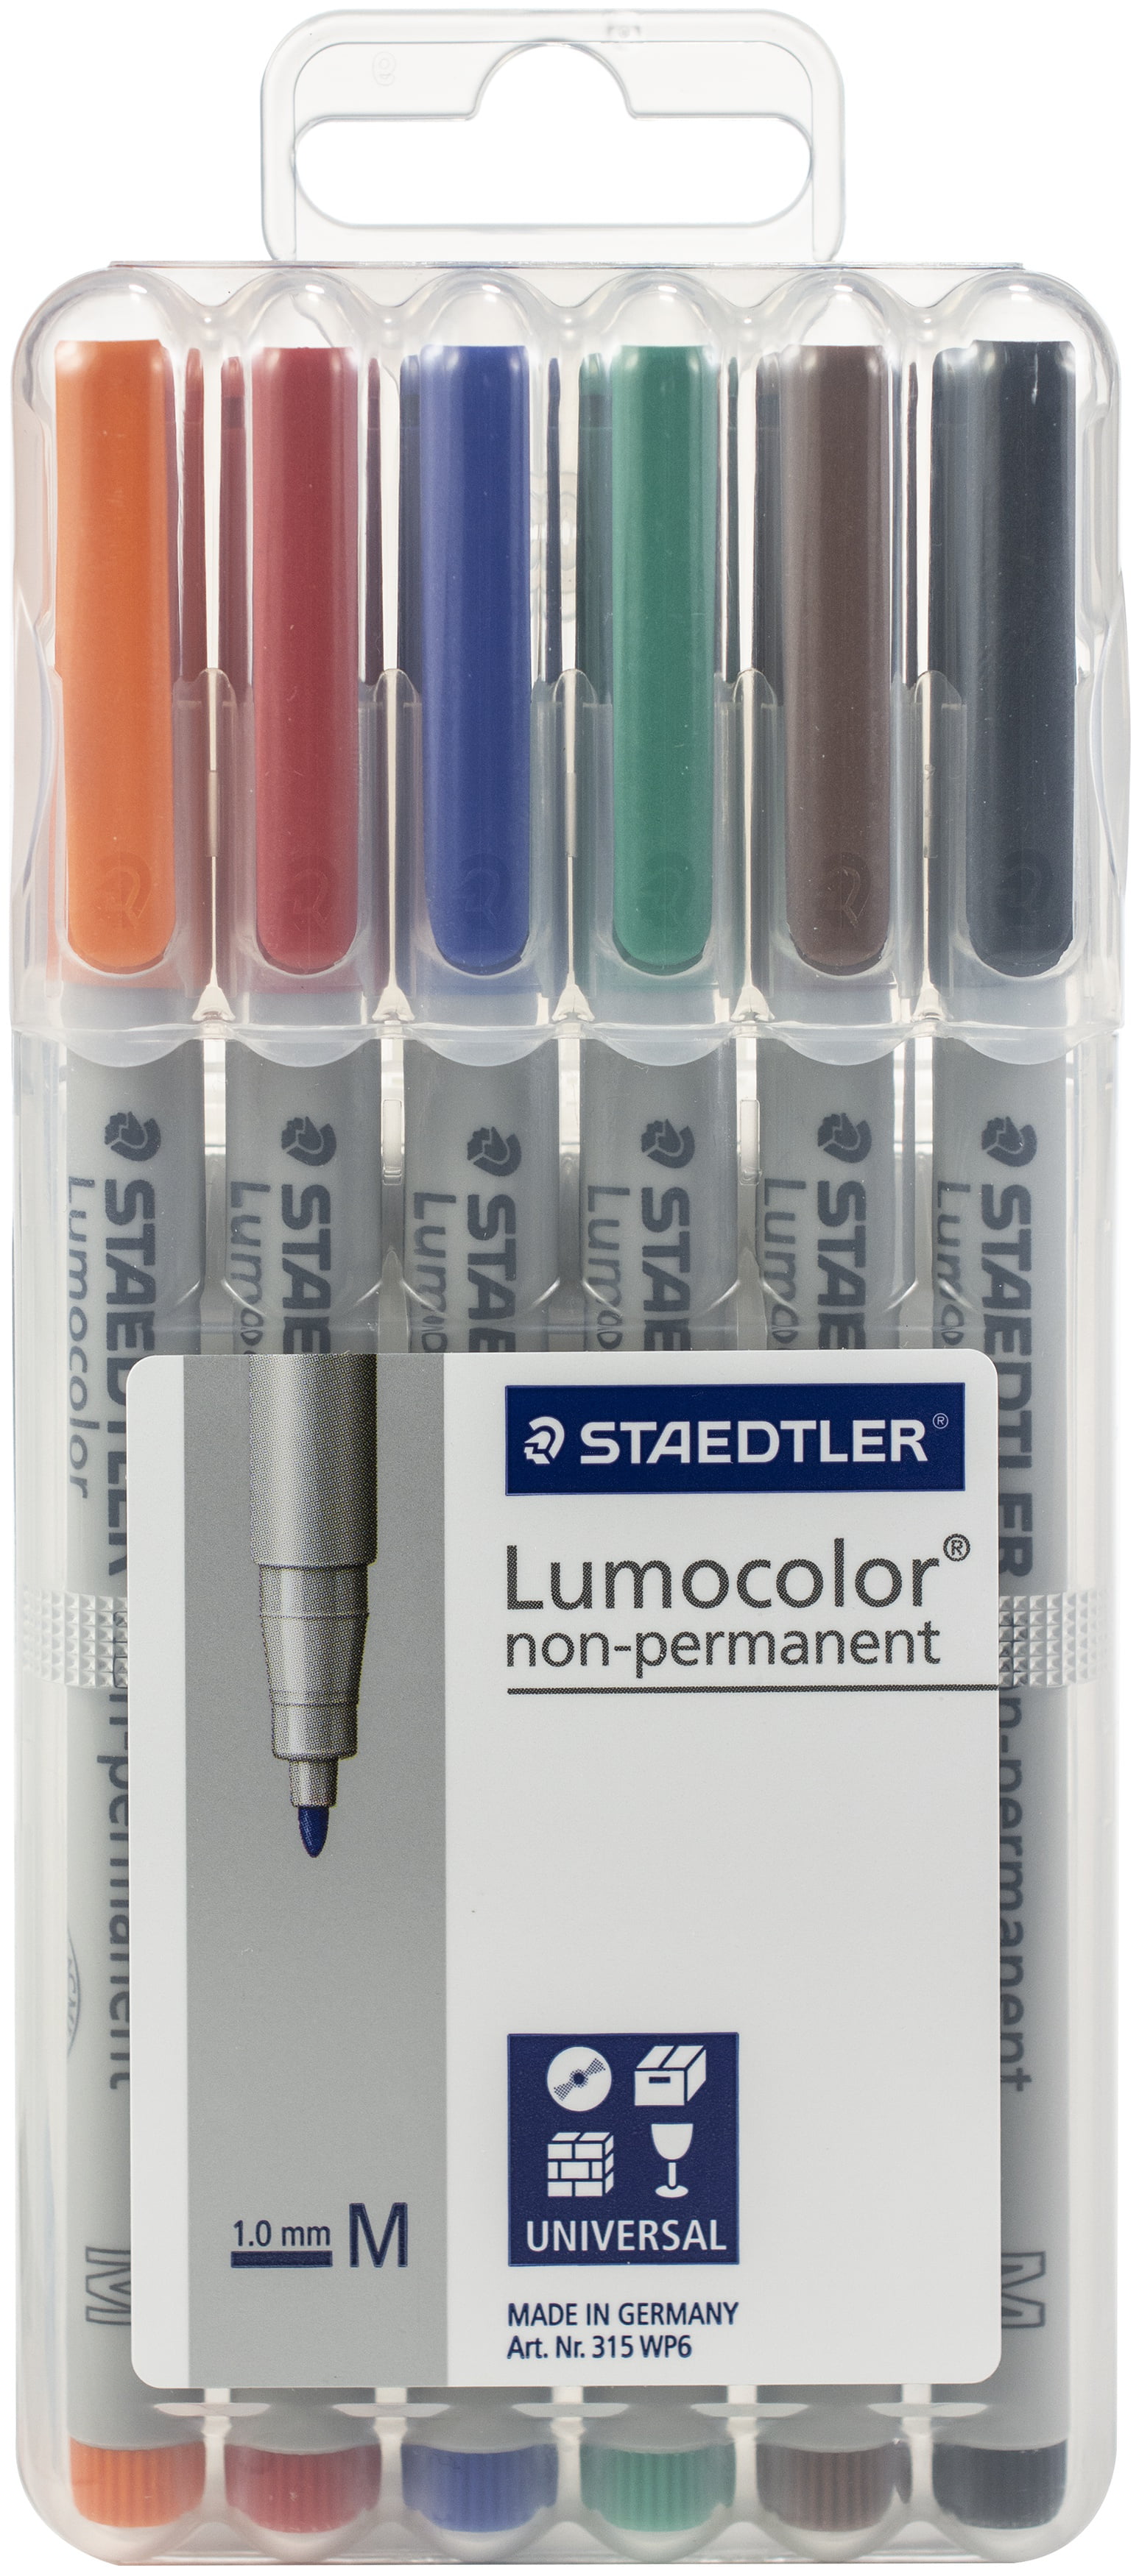 4 colours /pack STAEDTLER Lumocolor non-permanent universal pen MODEL:311WP4-S 